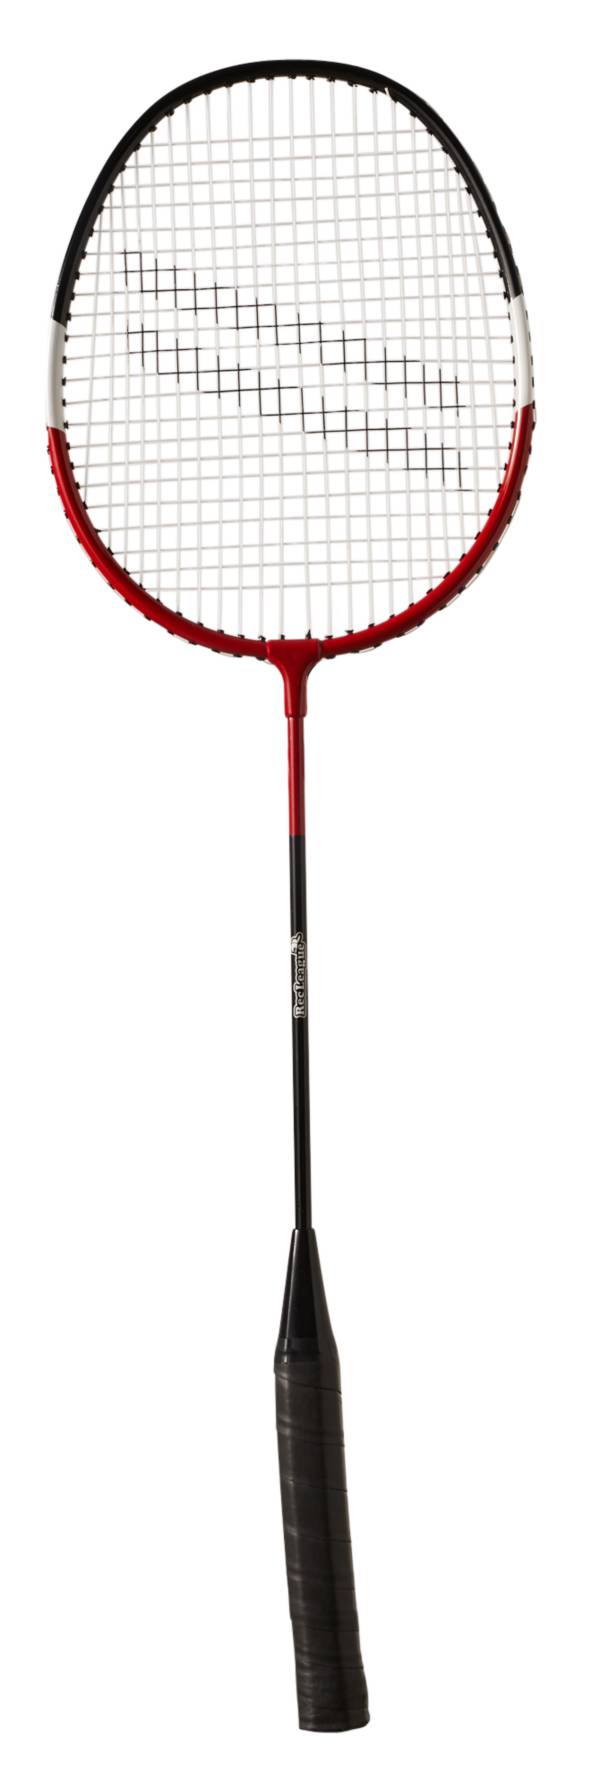 Rec League Badminton Racquet product image